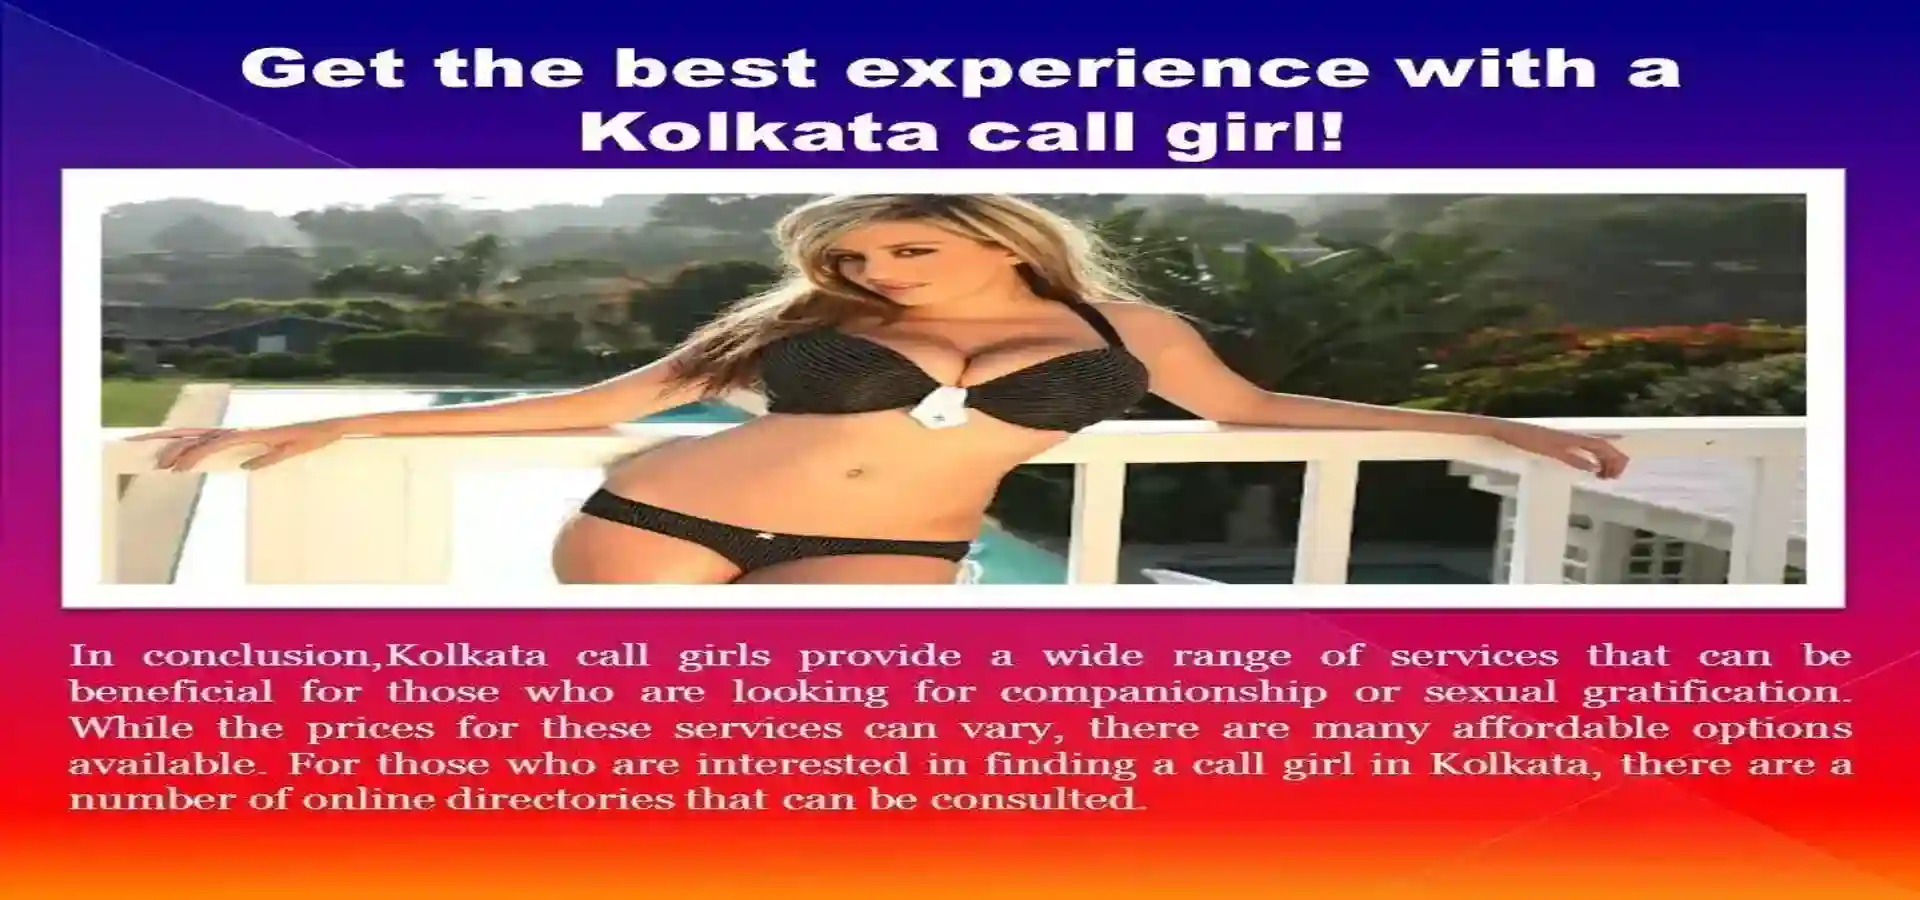 Call Girls in Chennai